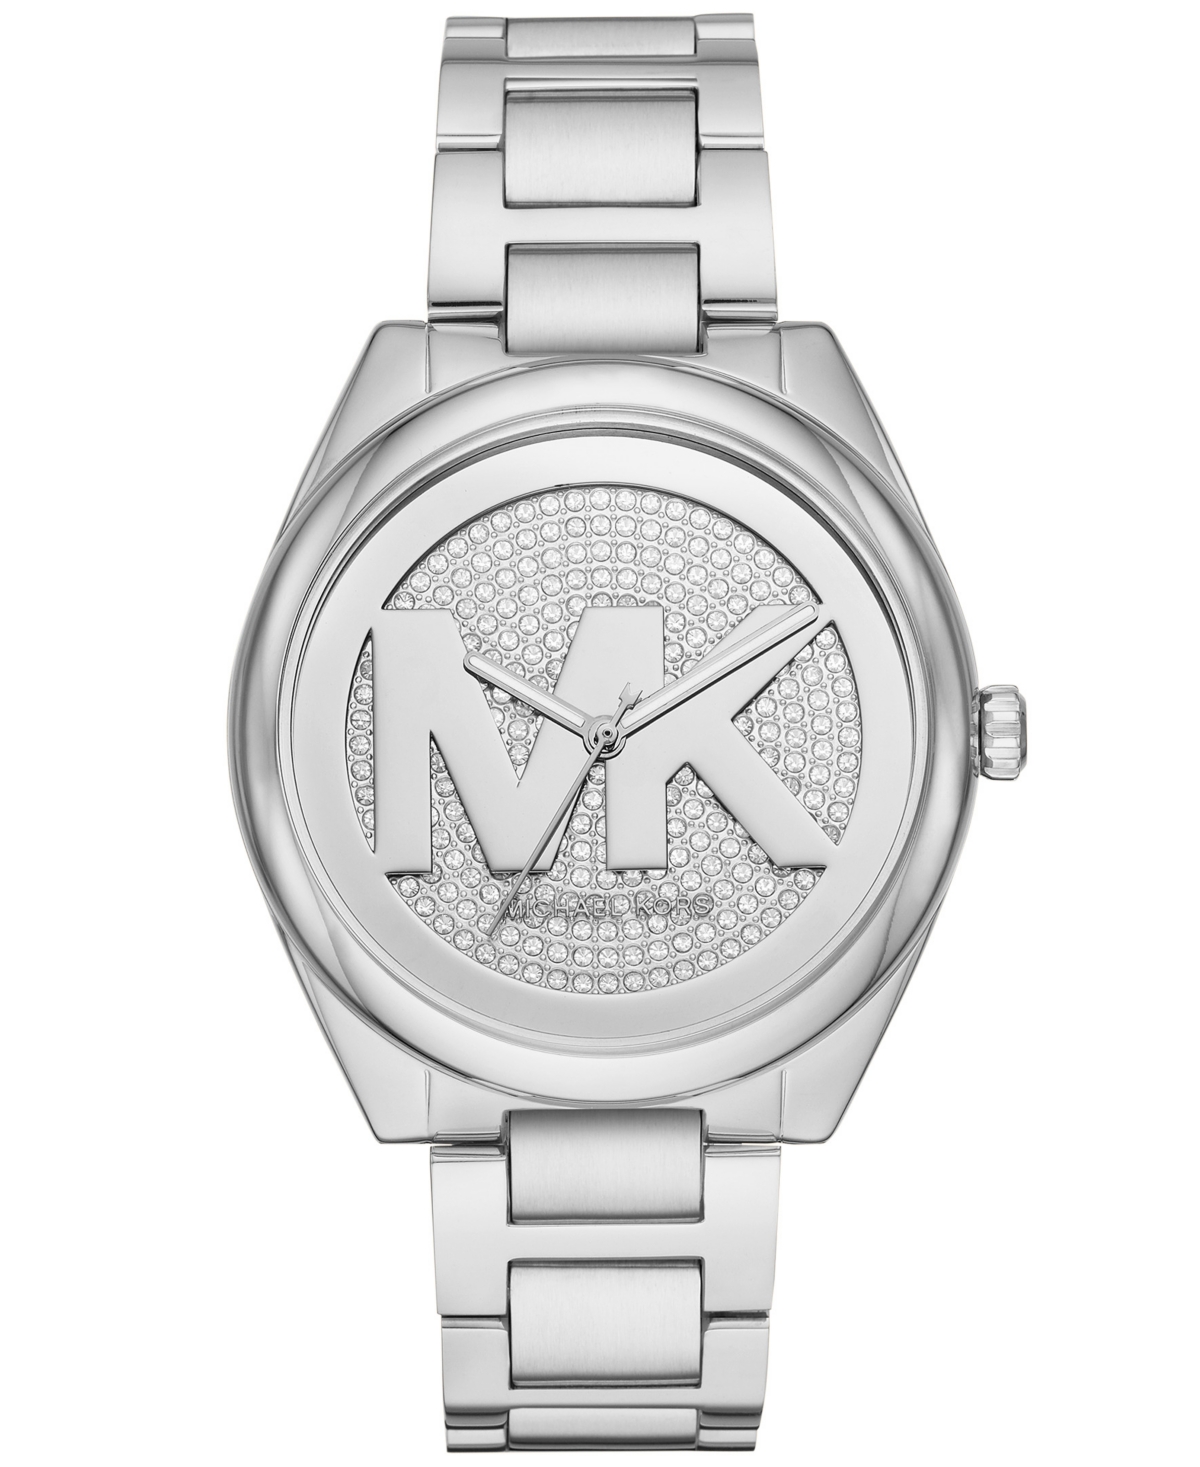 Michael Kors Women's Janelle Three-hand Silver-tone Stainless Steel Bracelet Watch 42mm